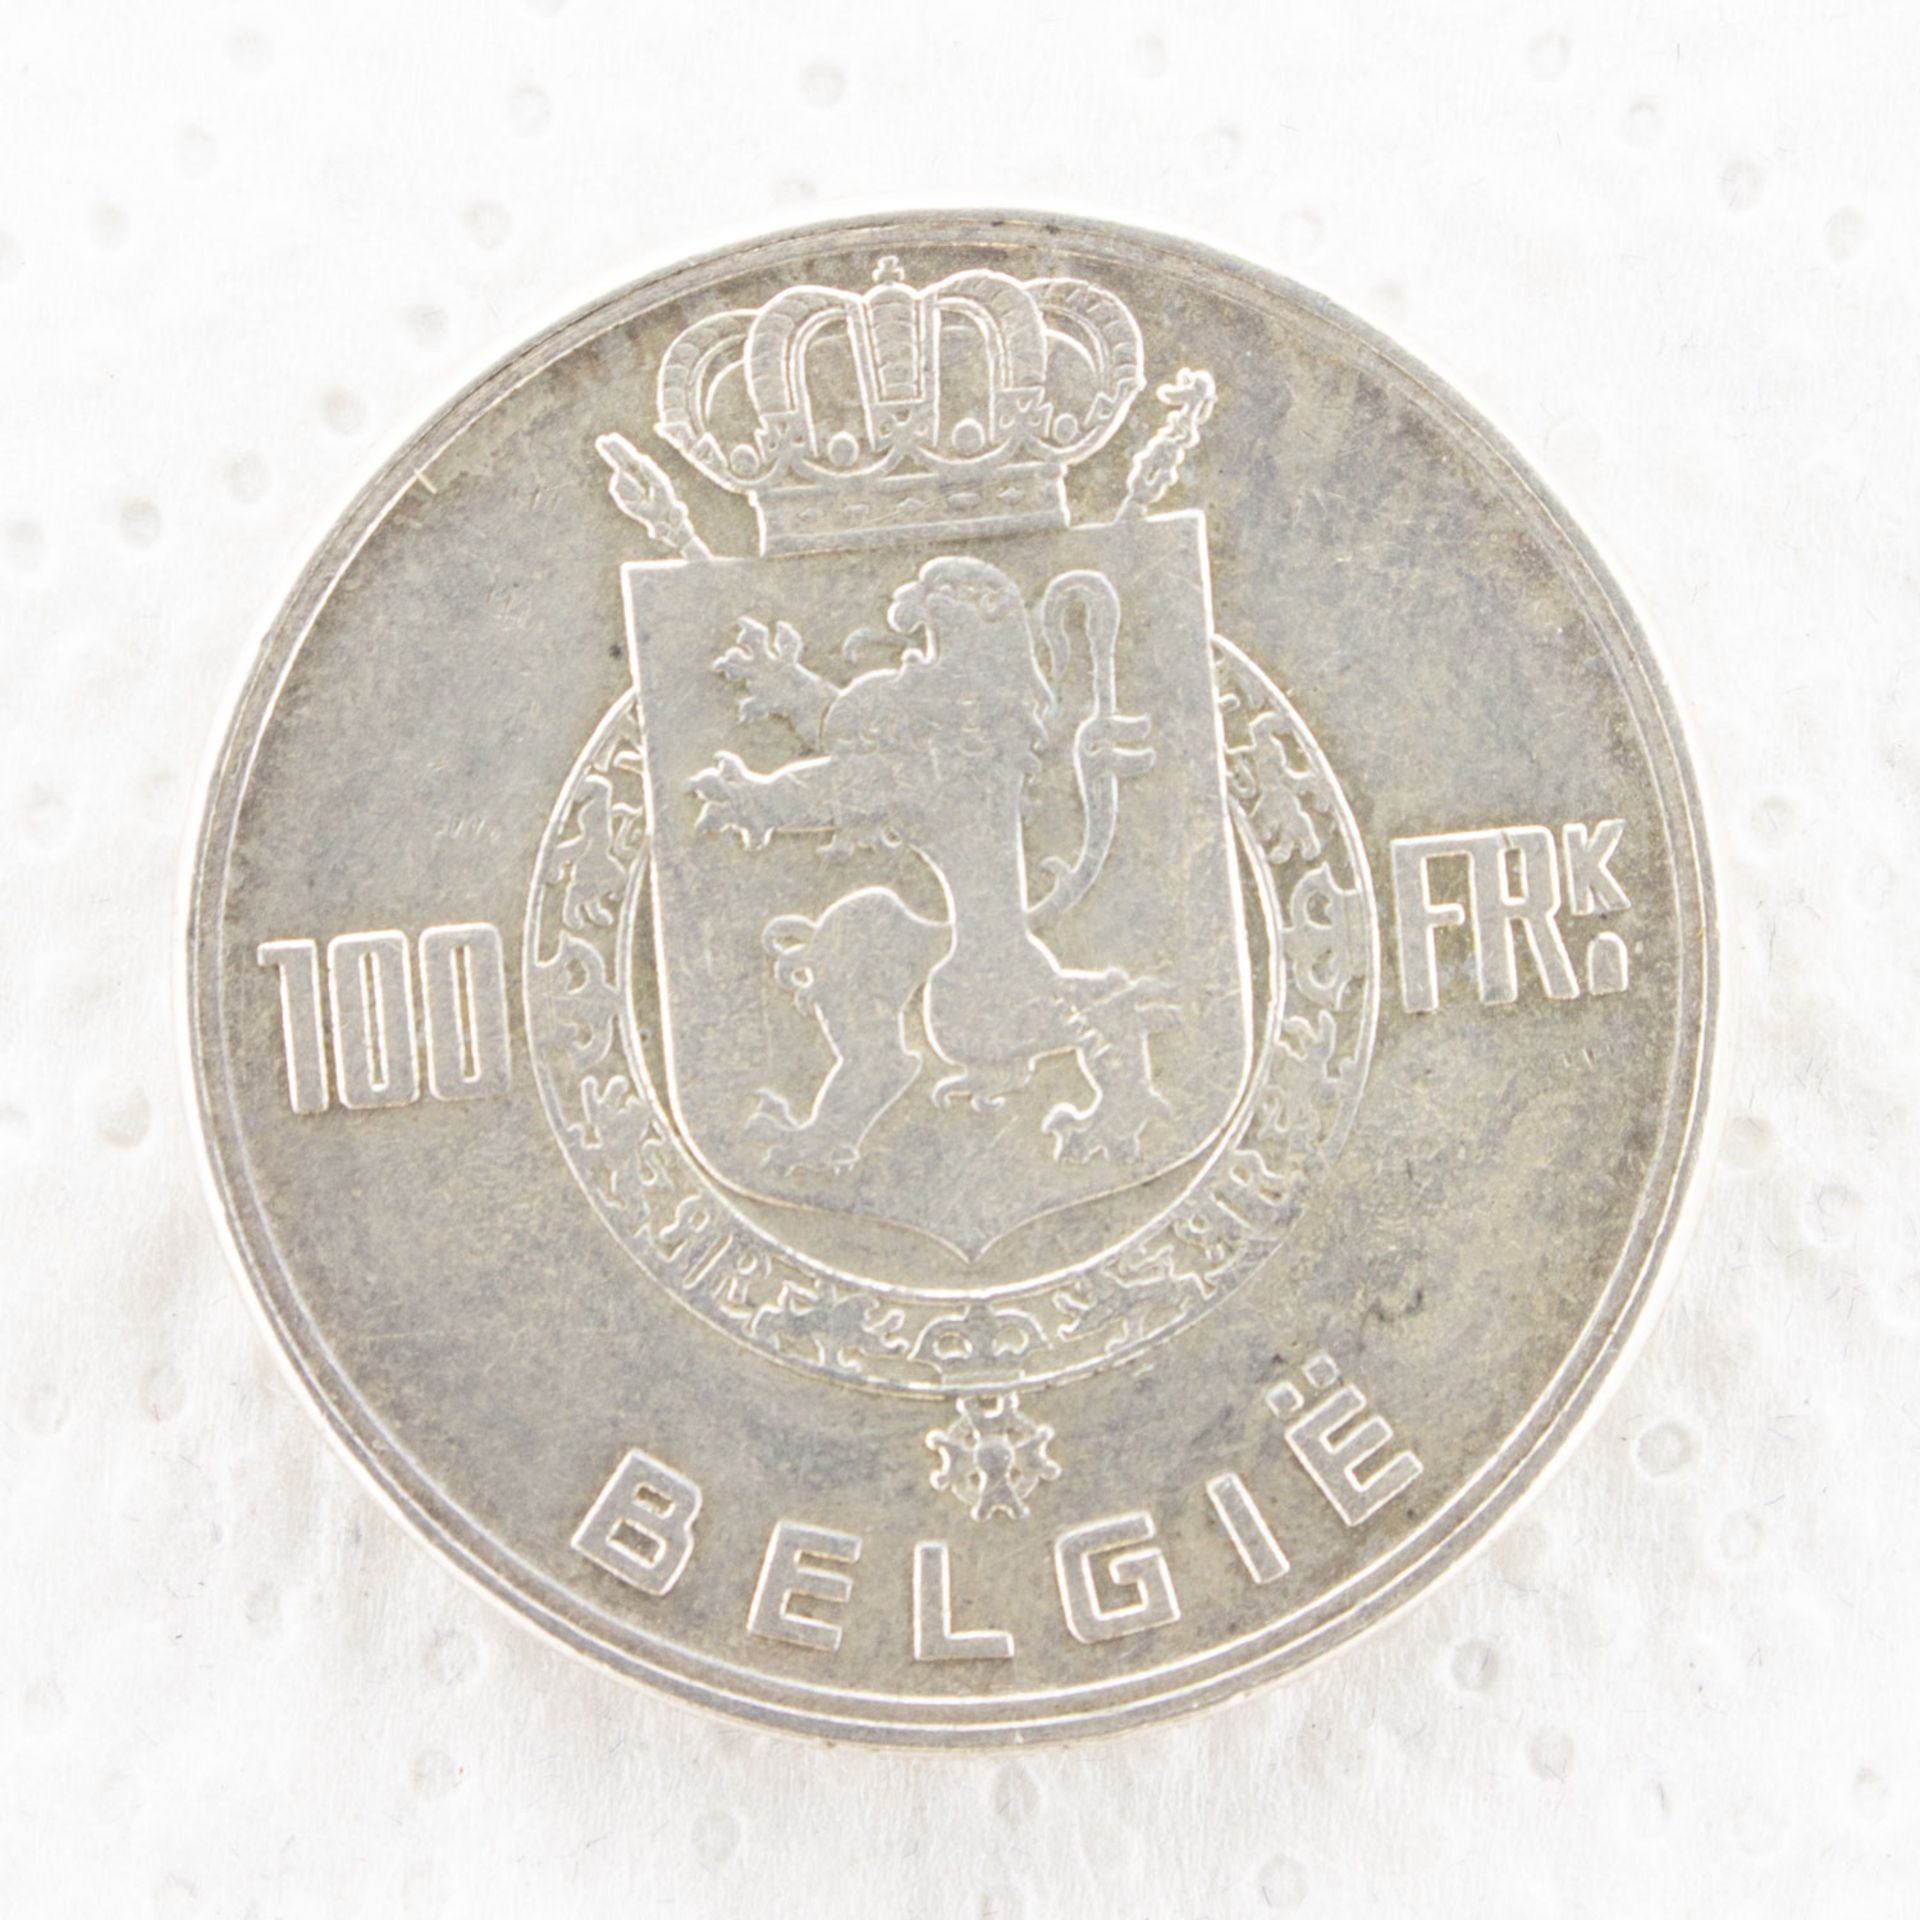 100 Francs - Image 2 of 2